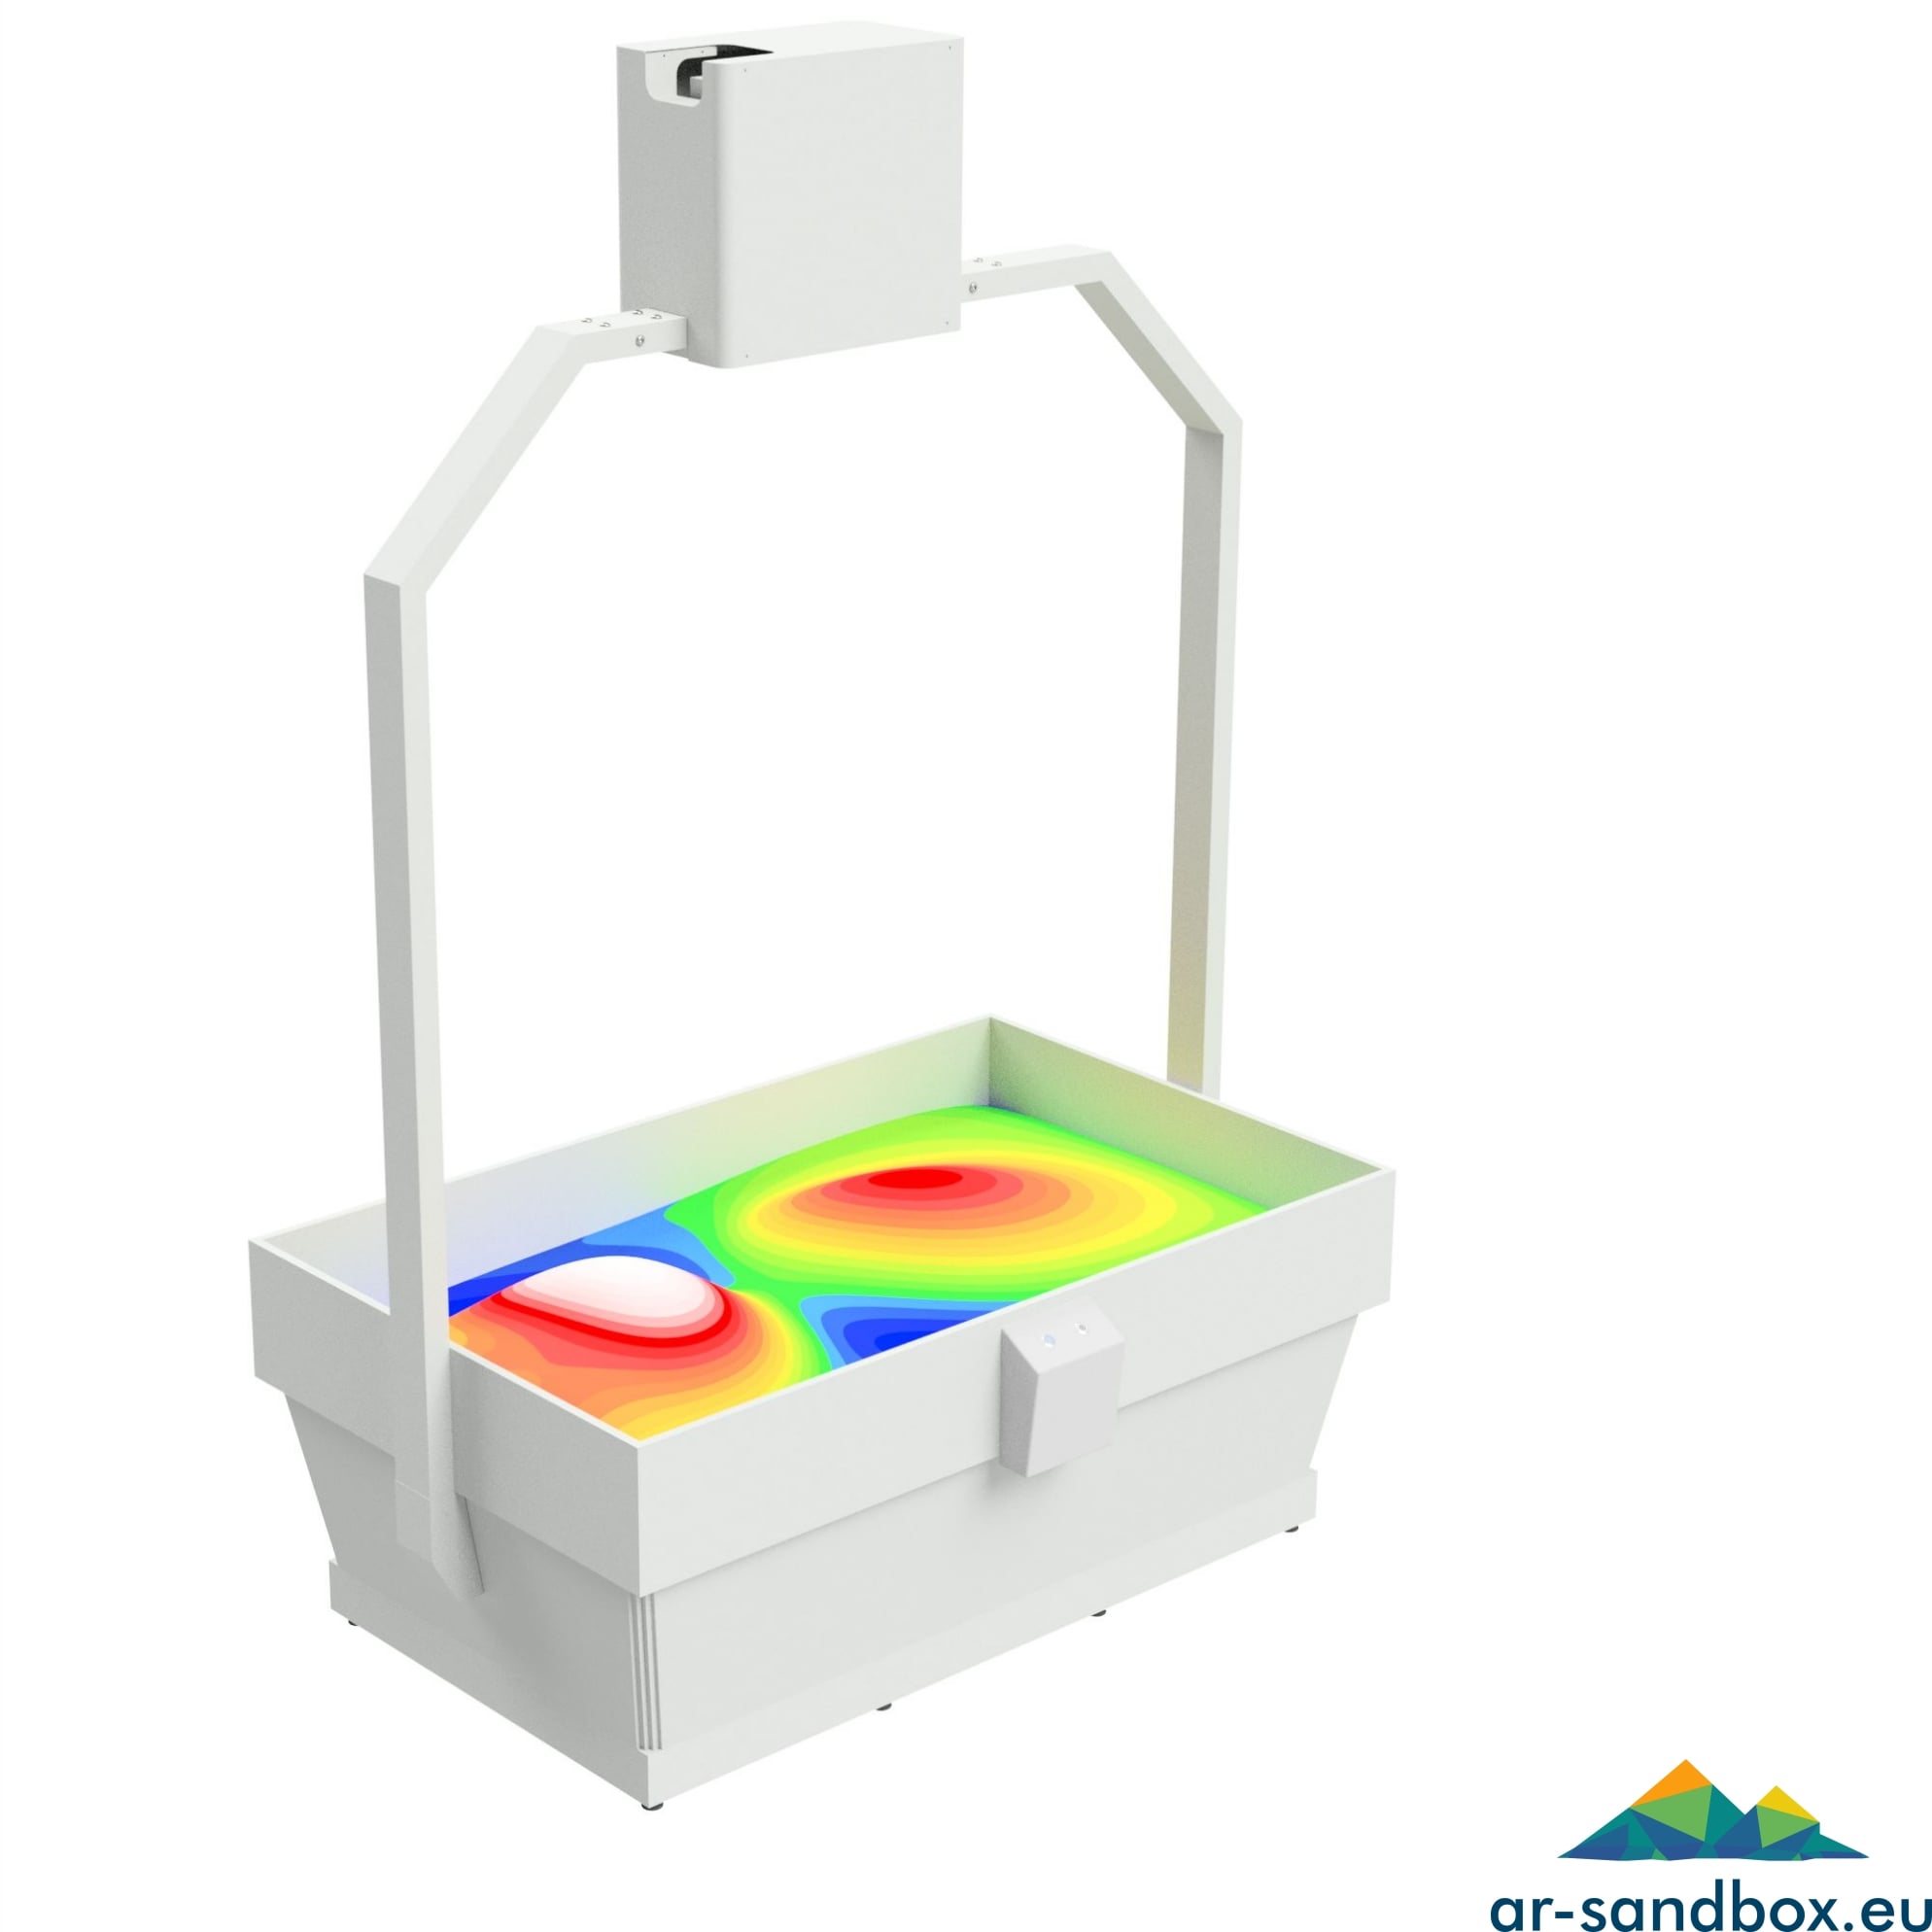 Augmented Reality Sandbox – Large Standalone Model